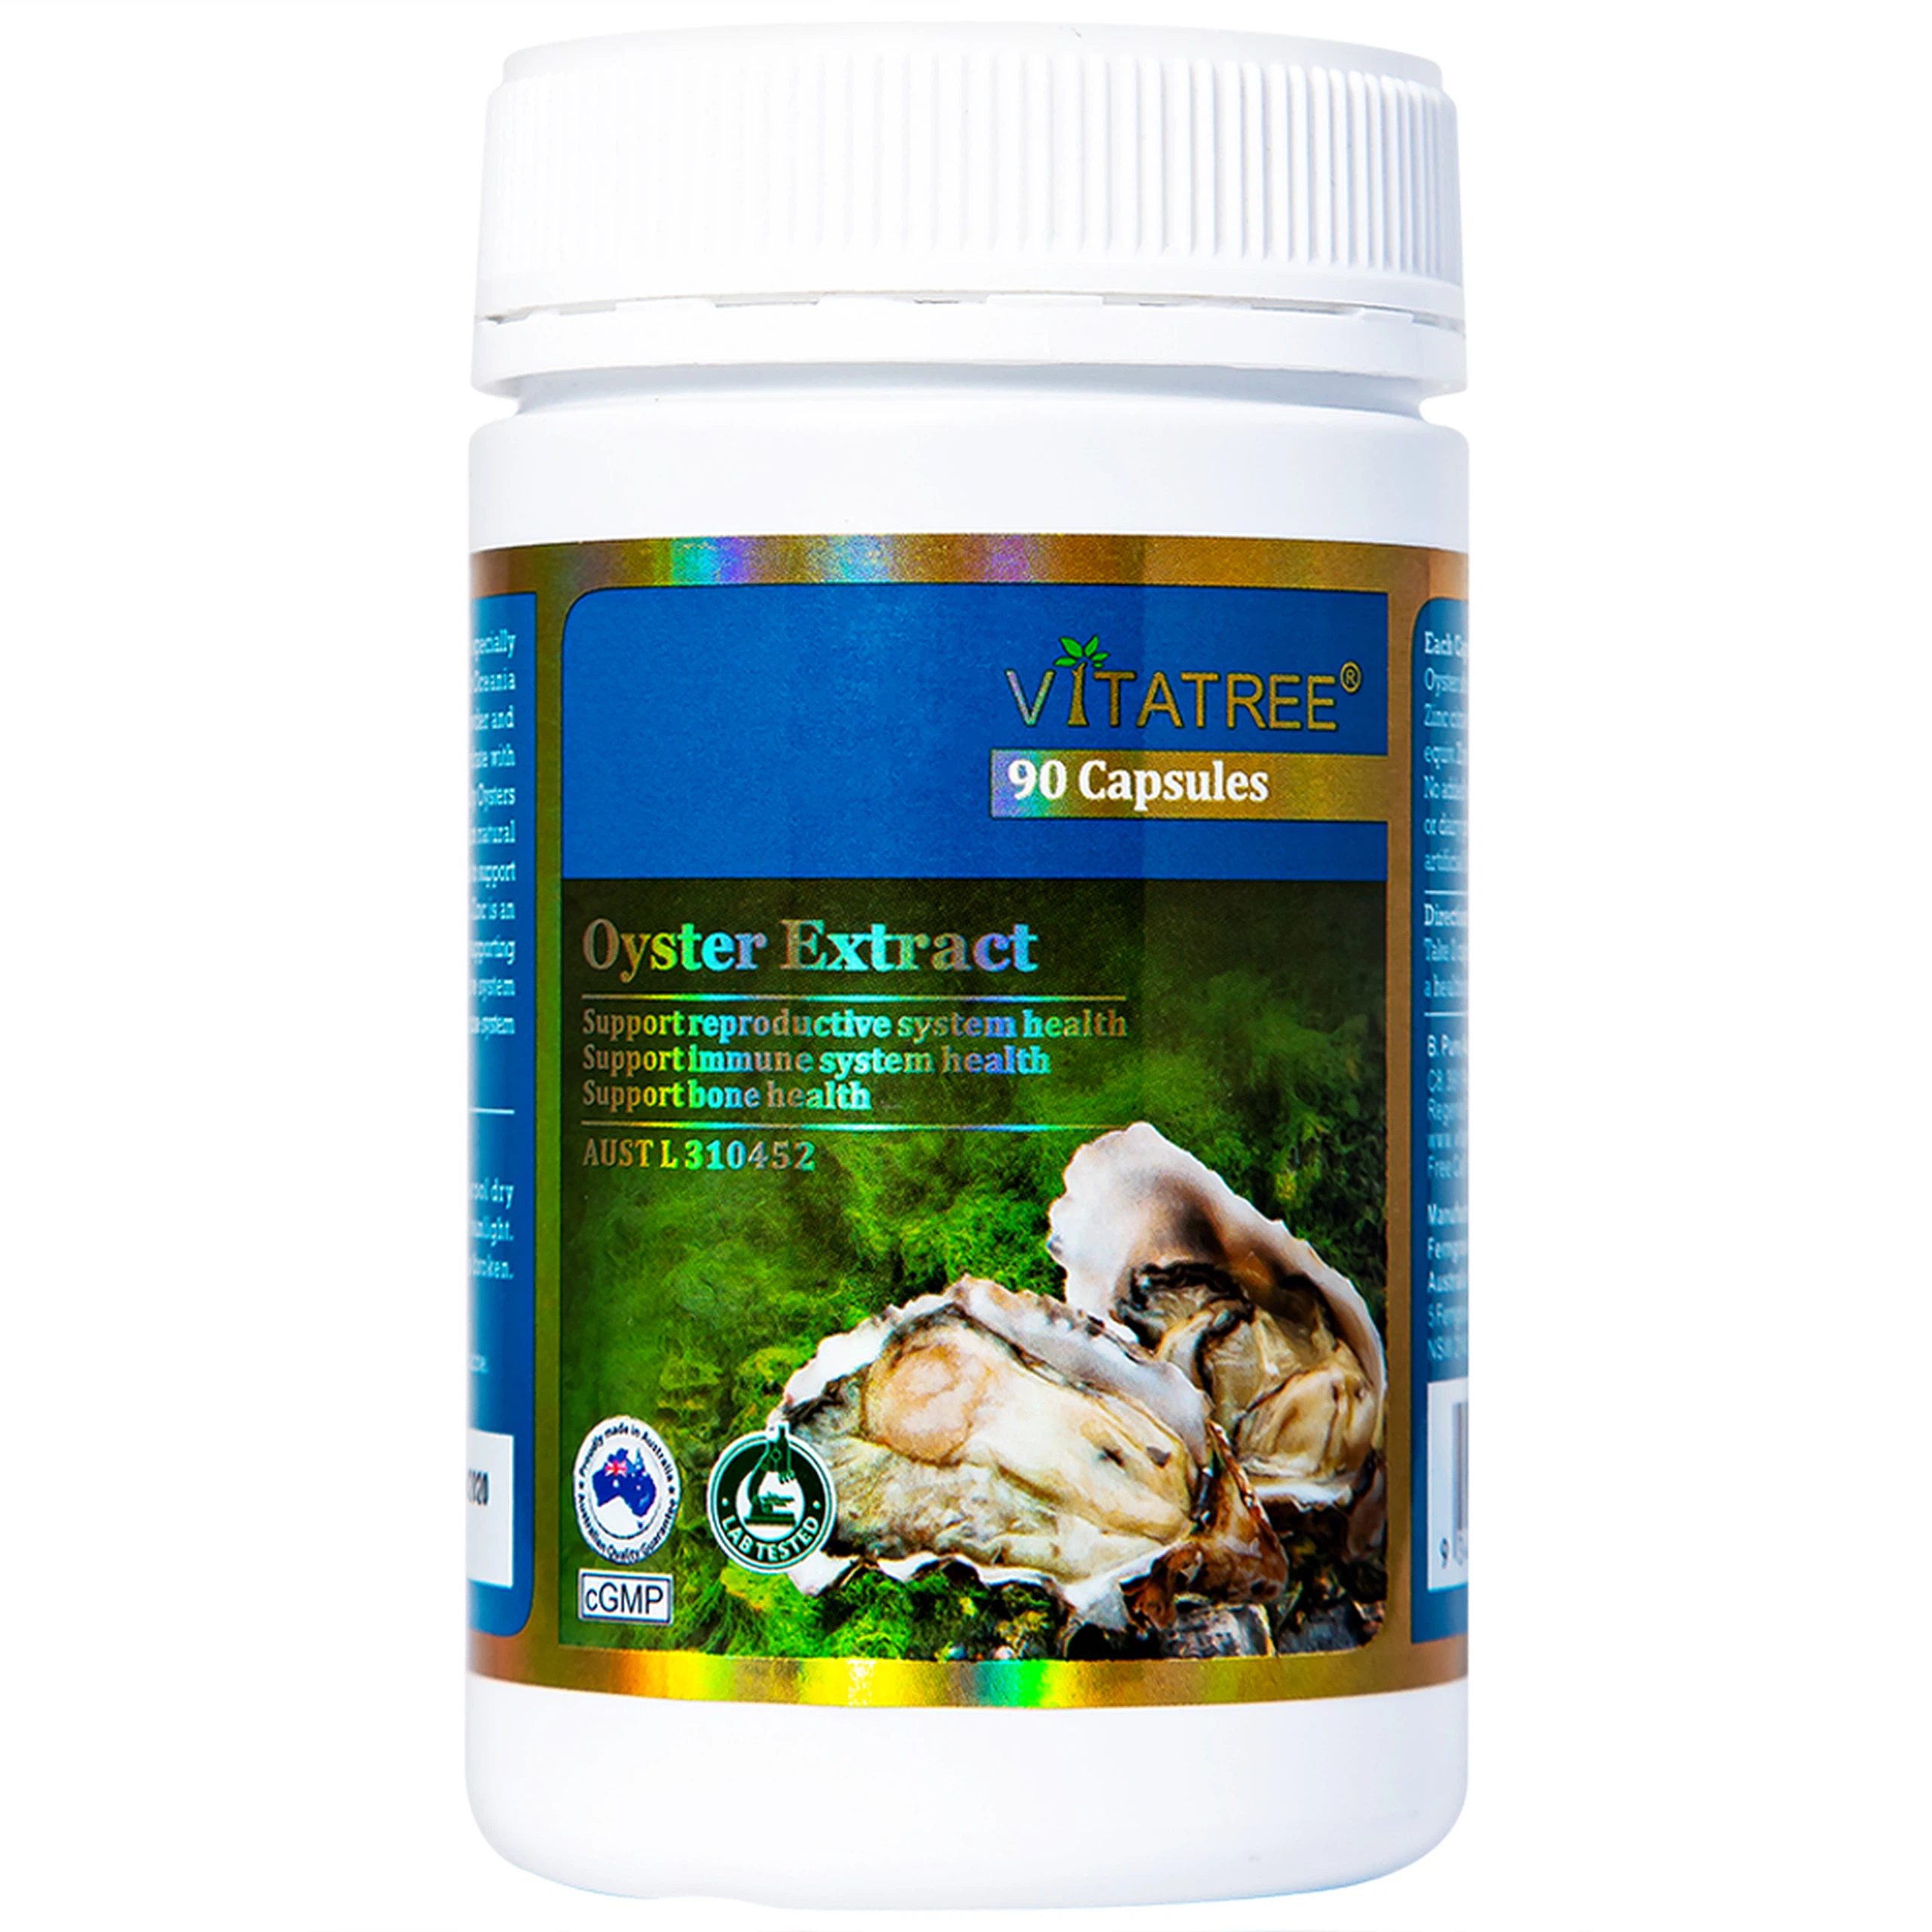 Viên uống Oyster Extract Vitatree hỗ trợ duy trì sức khỏe sinh sản cho nam giới (90 viên)